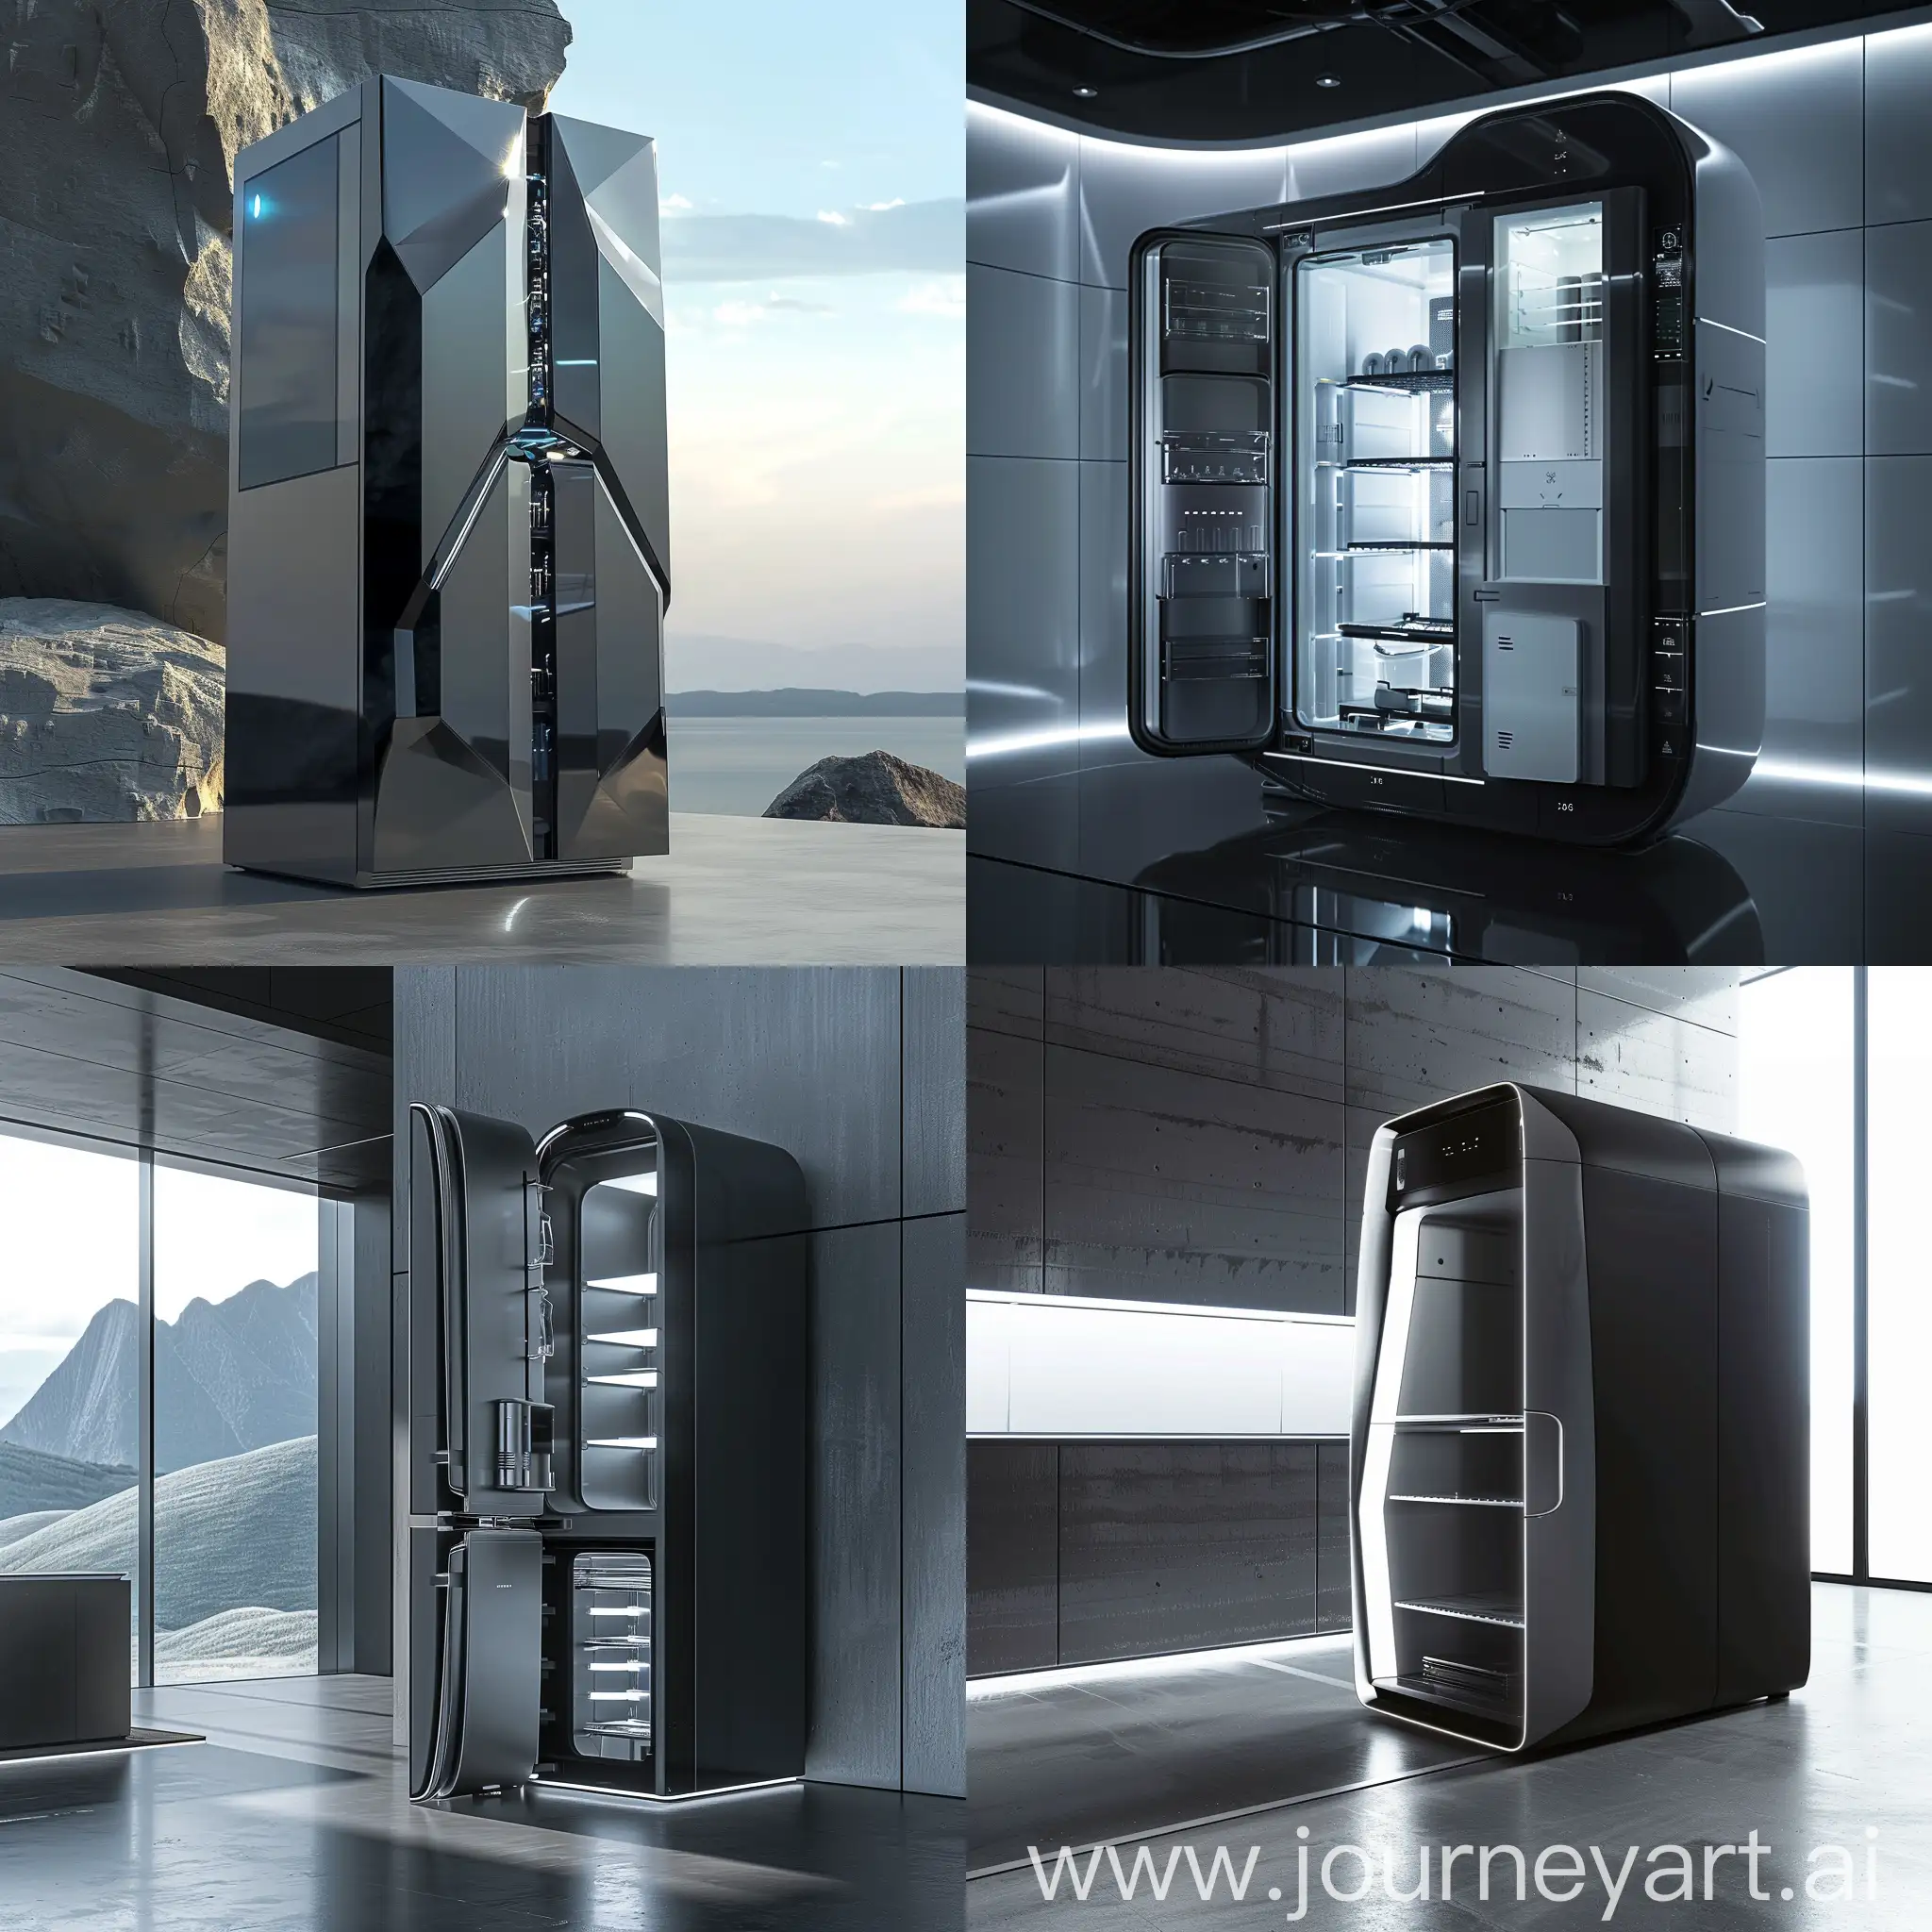 Futuristic-CGI-of-Dynamic-Motion-in-a-Sleek-Refrigerator-Design